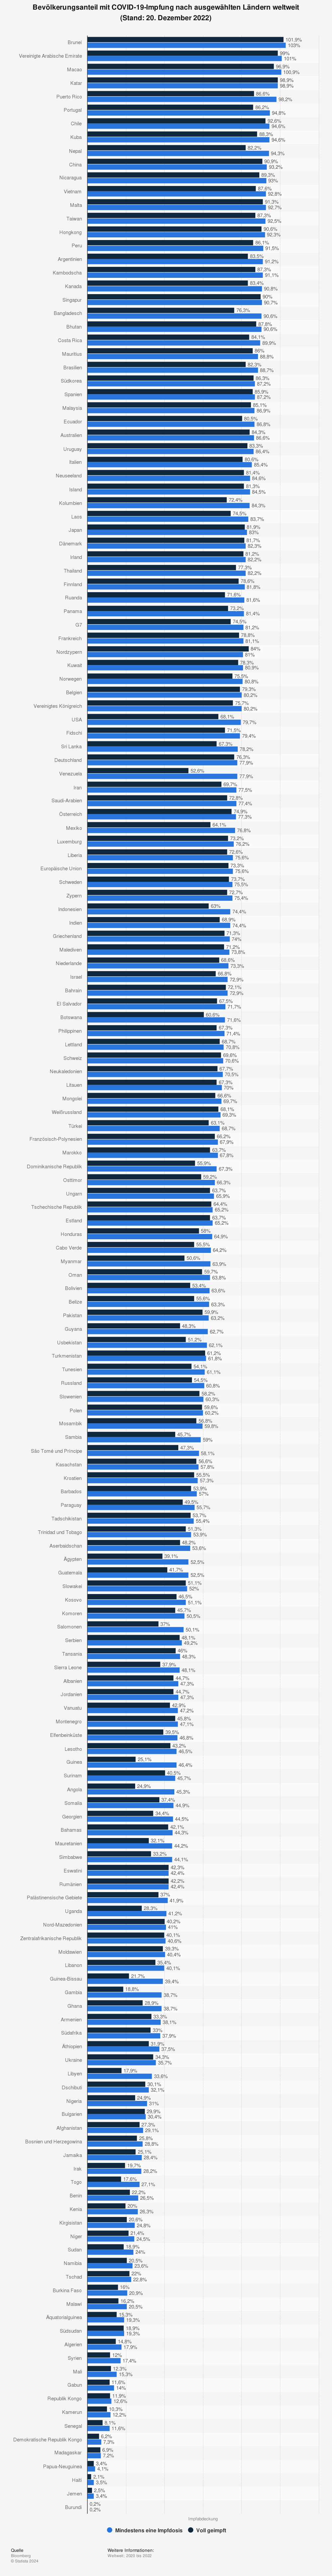 Statistik: Bevölkerungsanteil mit COVID-19-Impfung nach ausgewählten Ländern weltweit (Stand: 27. Januar 2022) | Statista